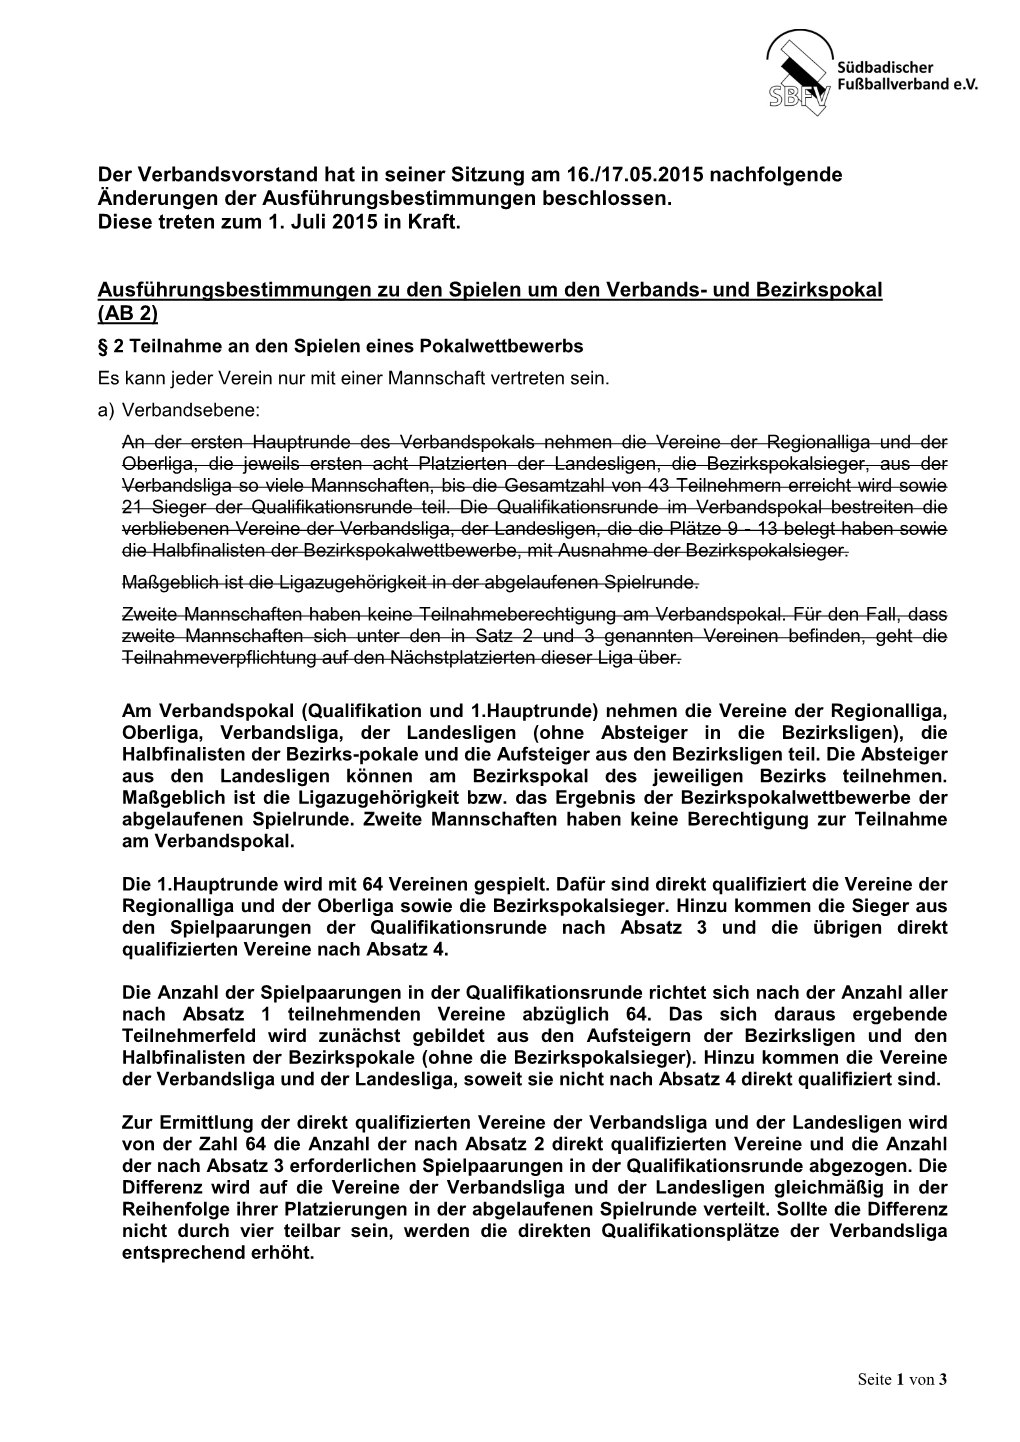 Der Verbandsvorstand Hat in Seiner Sitzung Am 16./17.05.2015 Nachfolgende Änderungen Der Ausführungsbestimmungen Beschlossen